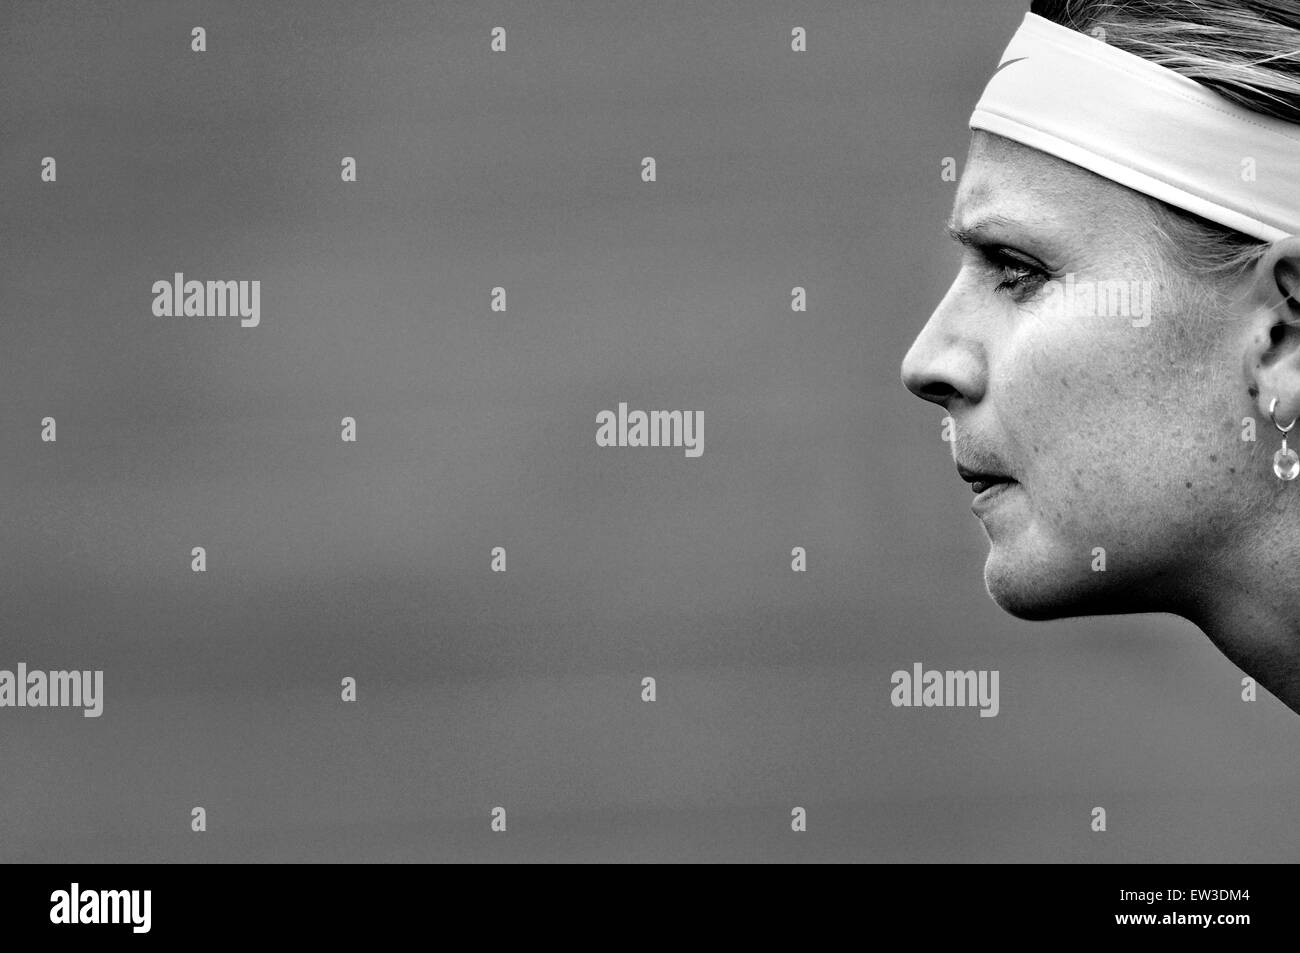 Lucie Safarova (République tchèque) Aegon International Tennis à Eastbourne, Royaume-Uni. 2013 Banque D'Images